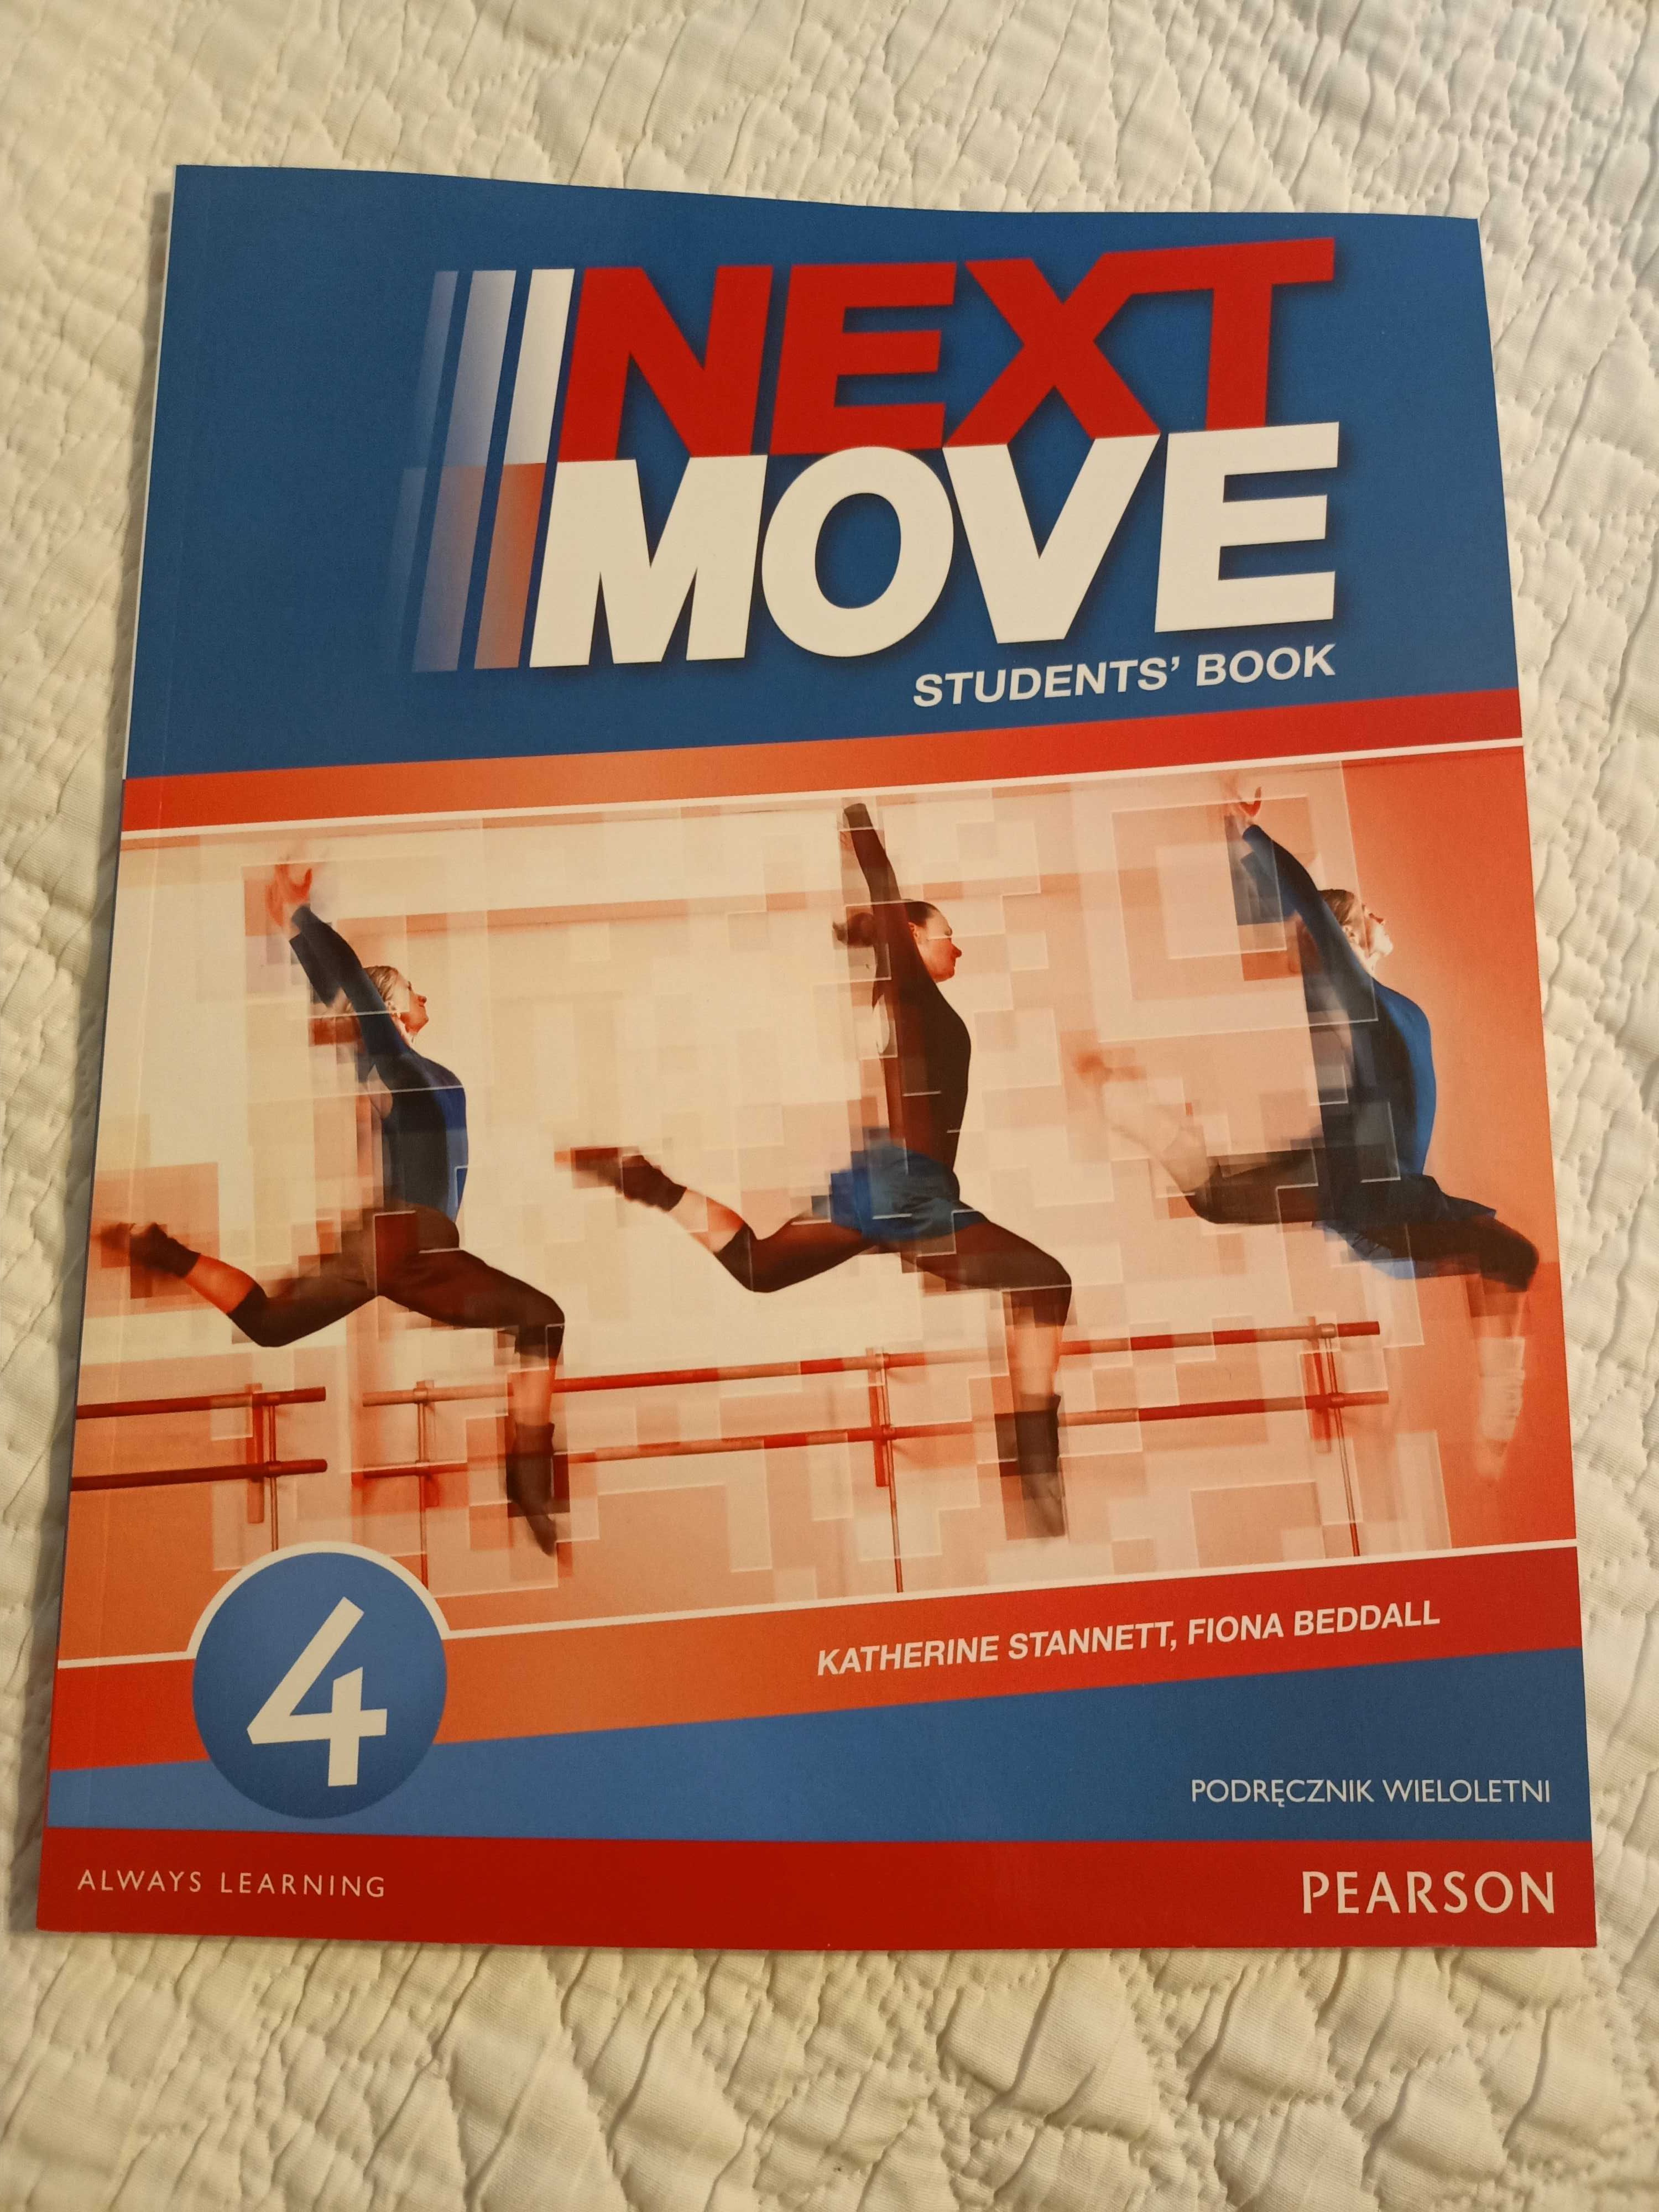 Next Move 4 Students' Book Podr wieloletni PEARSON z płytą